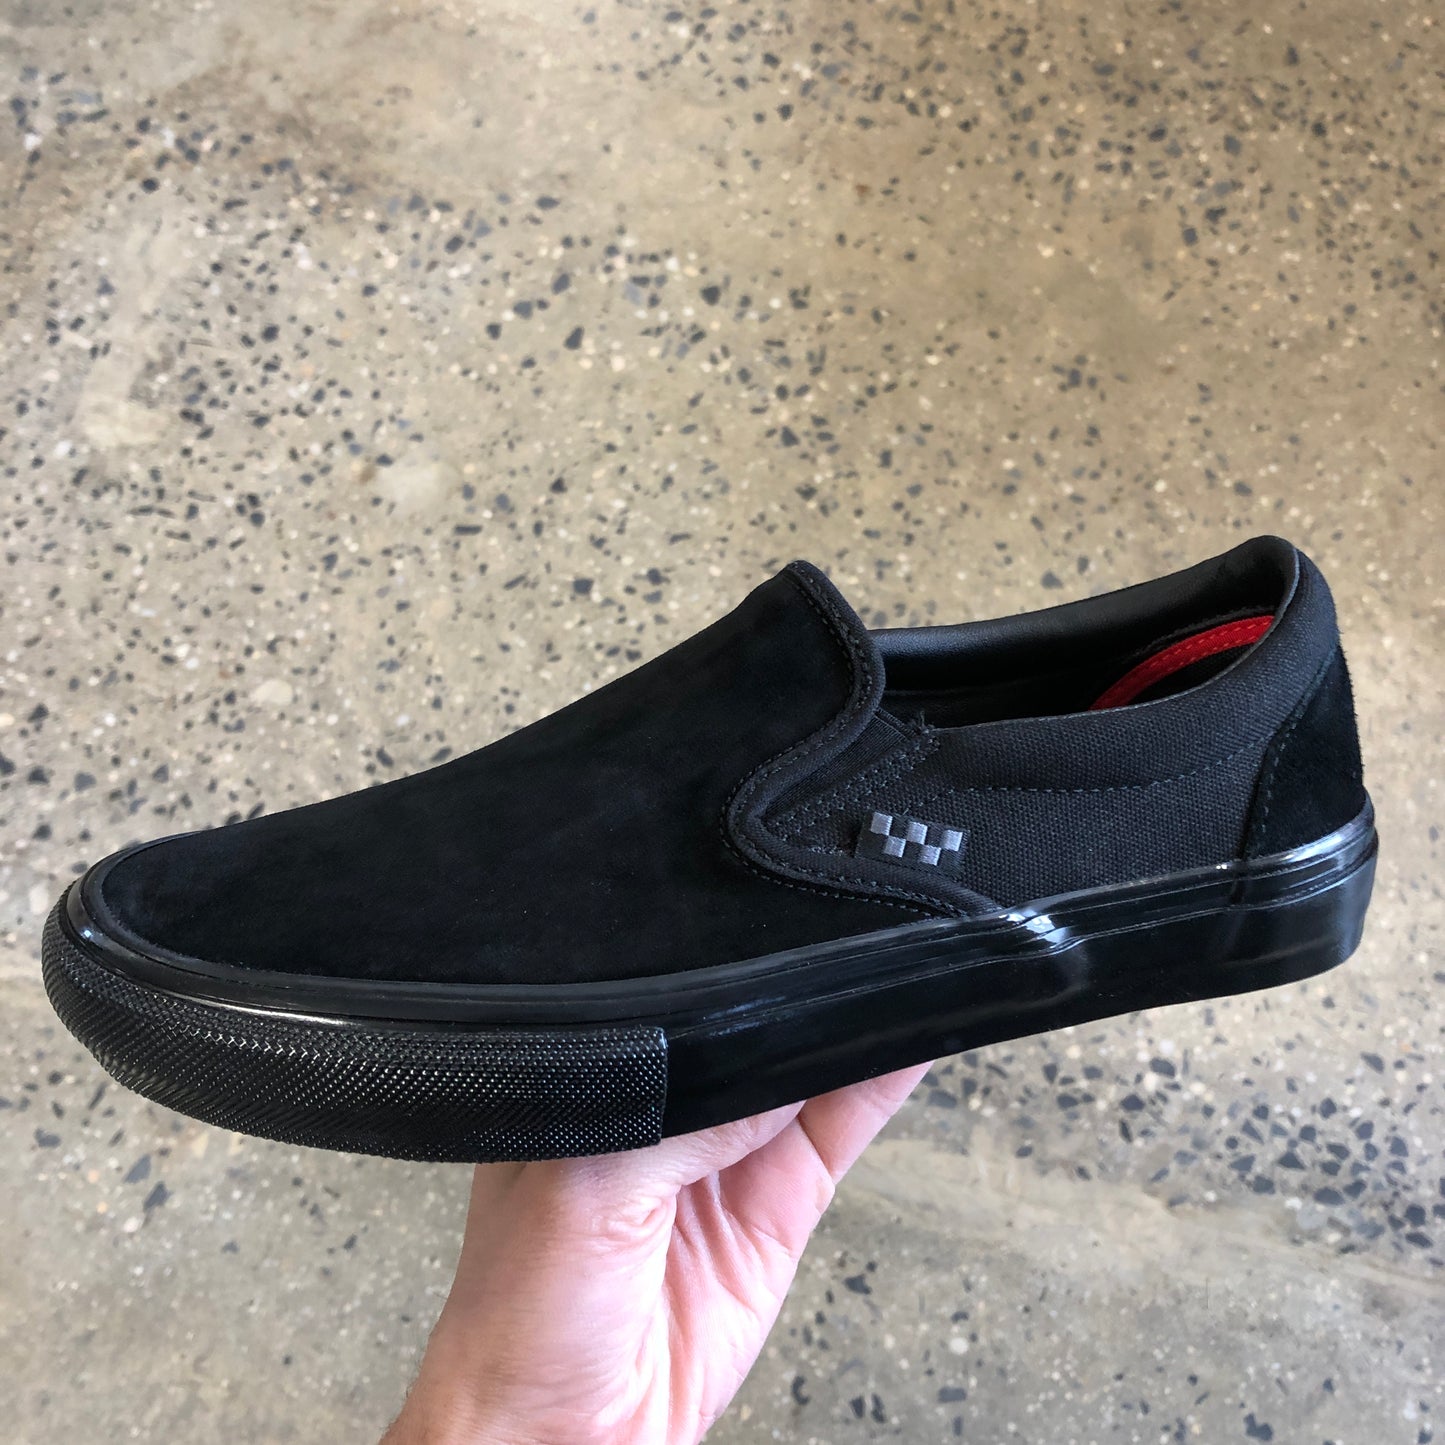 Vans Skate Slip On - Black/Black (Suede)